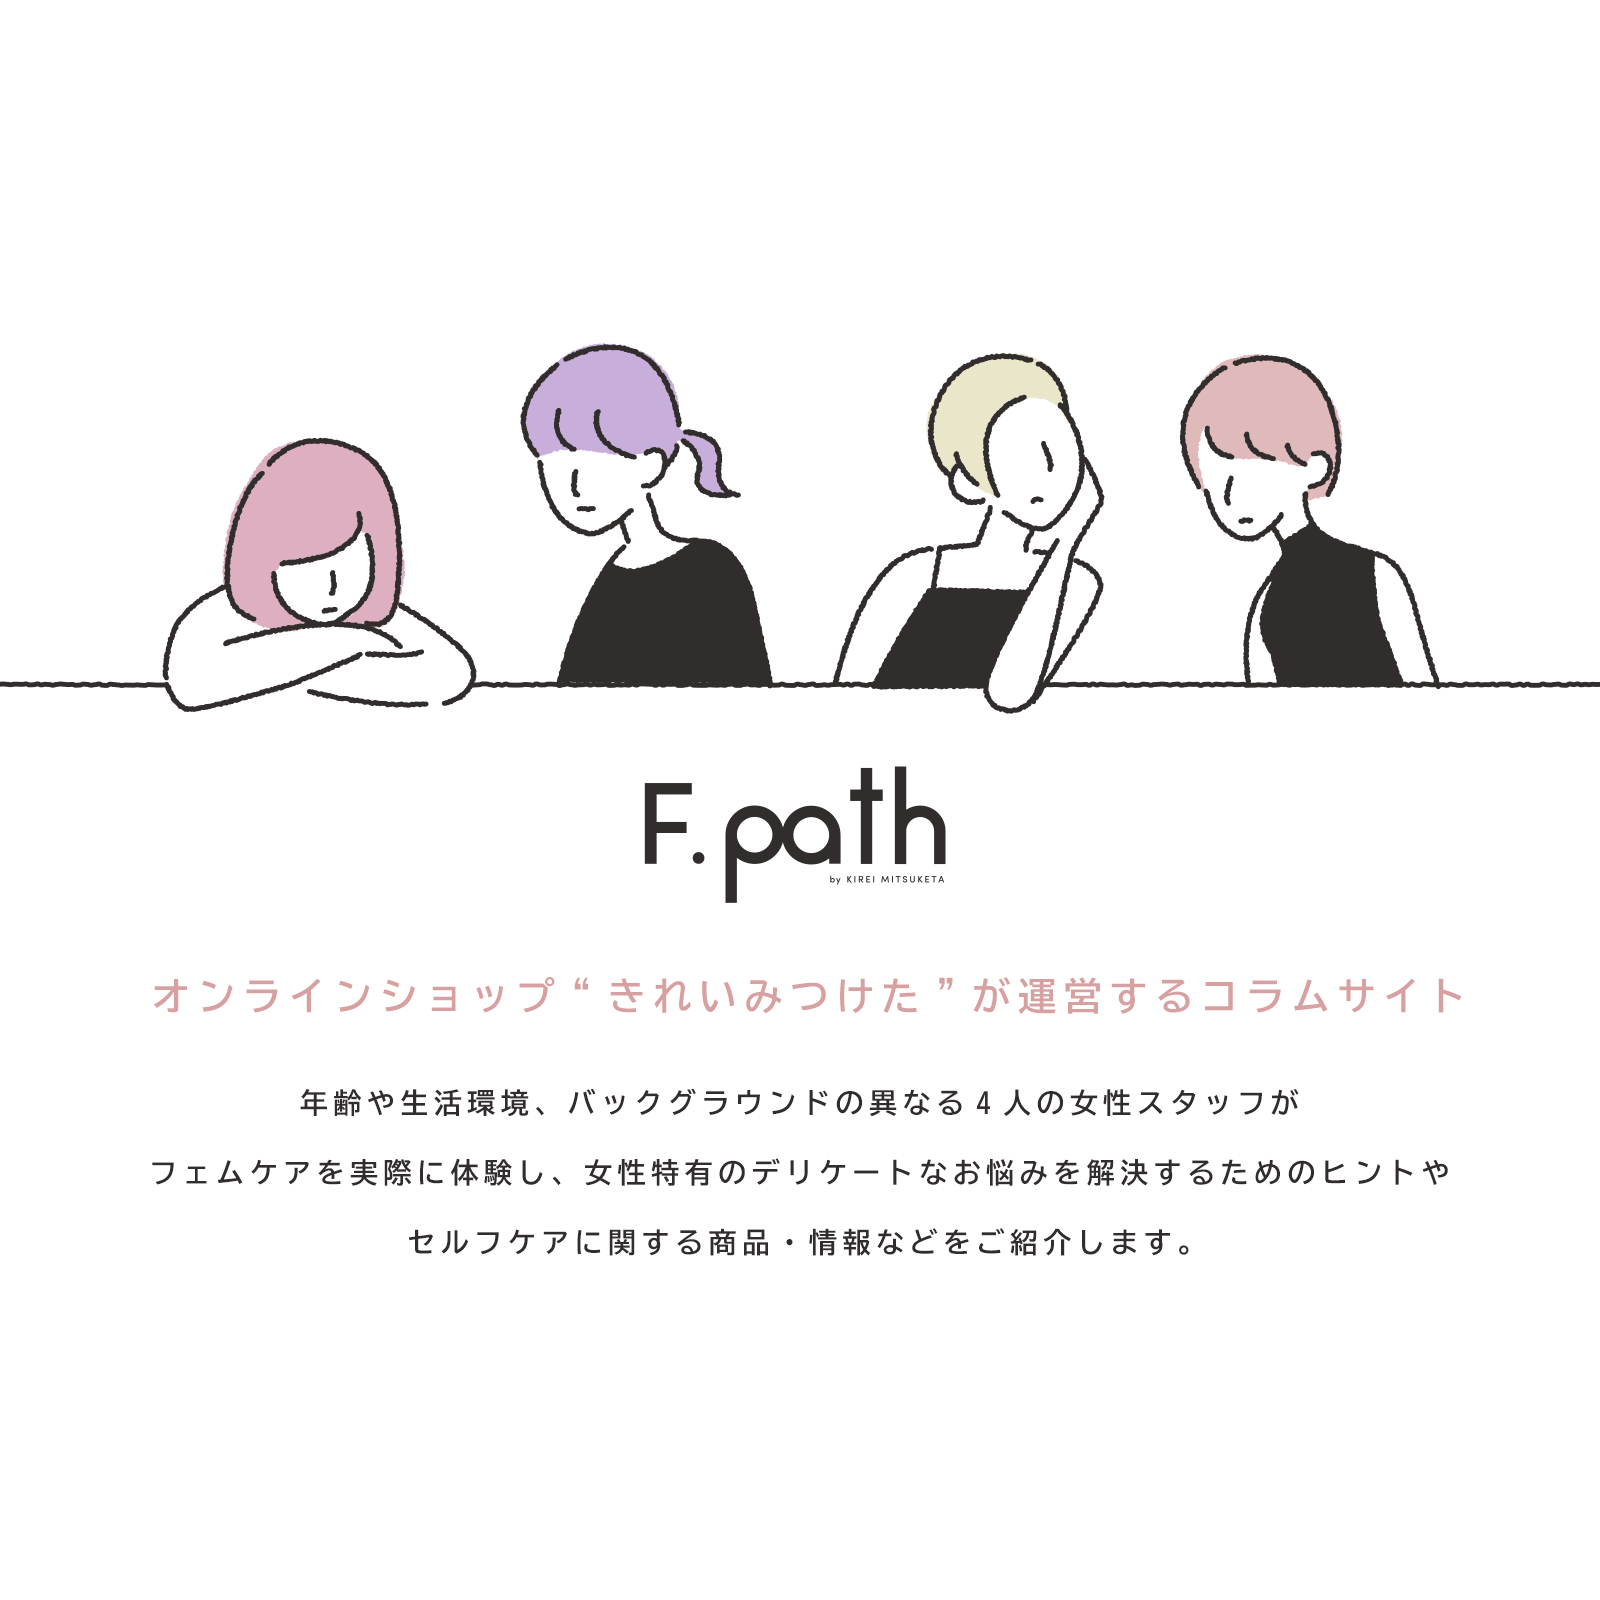 コラムサイト F.path（エフパス）